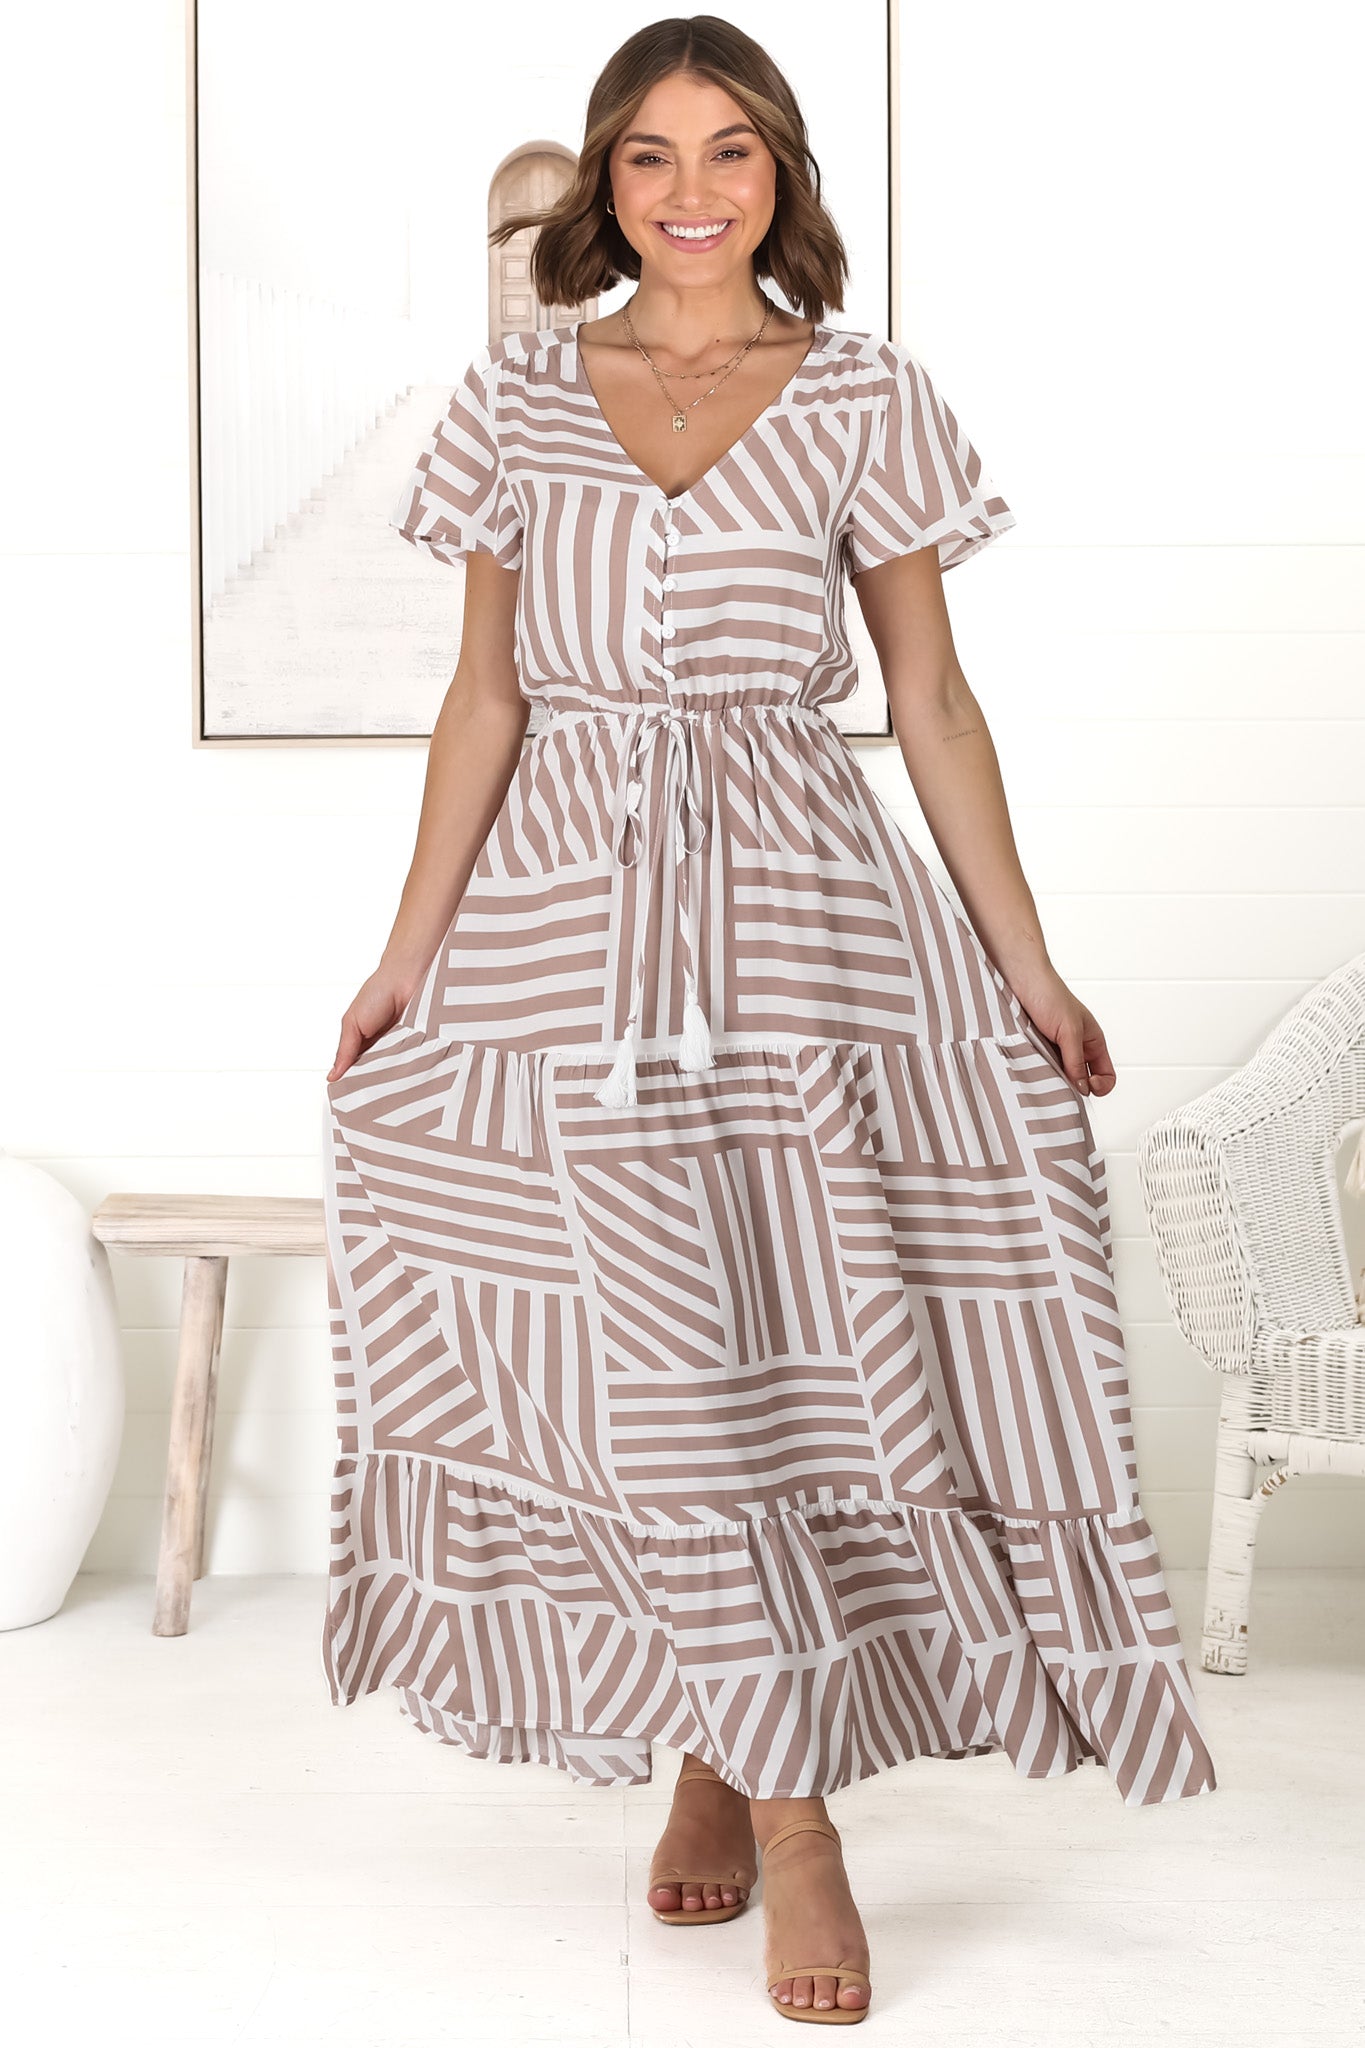 Derla Maxi Dress - V Neck A Line Dress with Tassel Pull Tie Wasit in Bonn Print Fawn